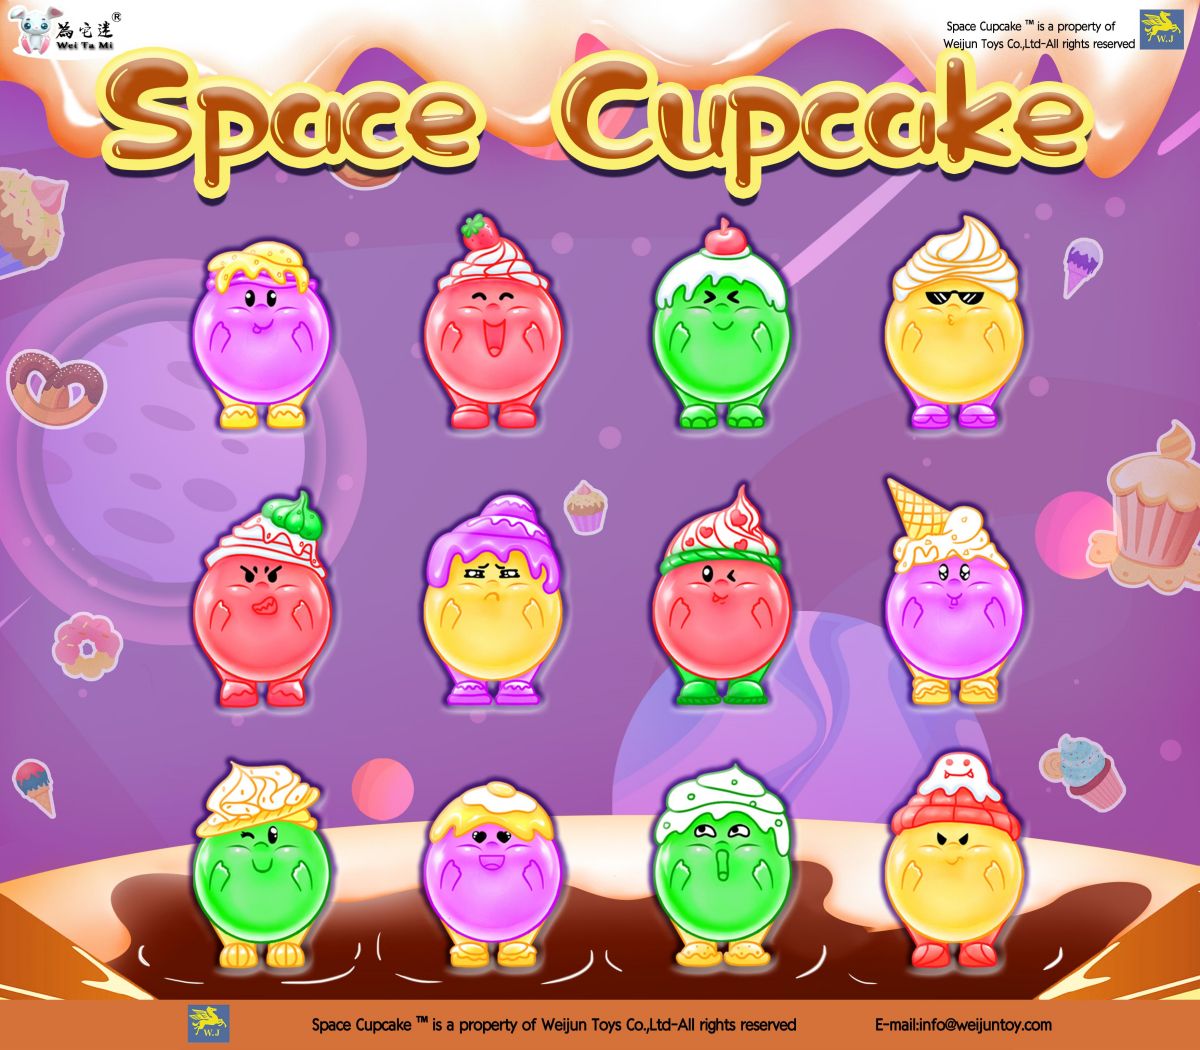 Wéi schéin sinn dem Wei Jun seng nei Space Cupcake Figuren?